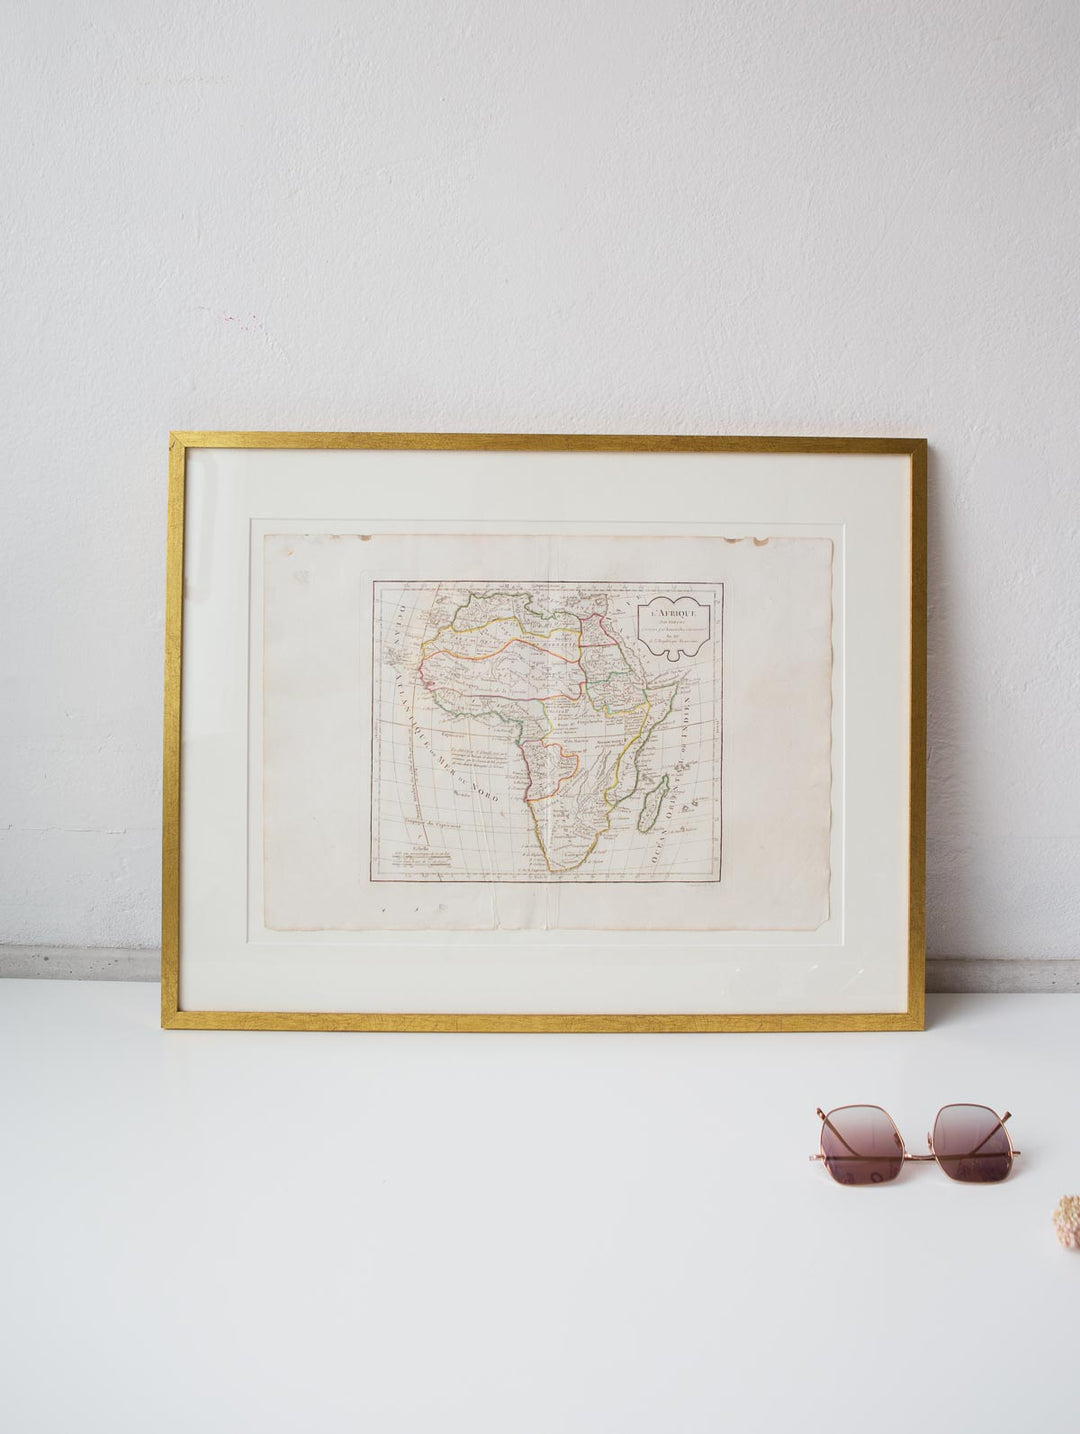 Antiguos mapas cartográficos Atlas de C.F. Delamarche 1806 (VENDIDA)